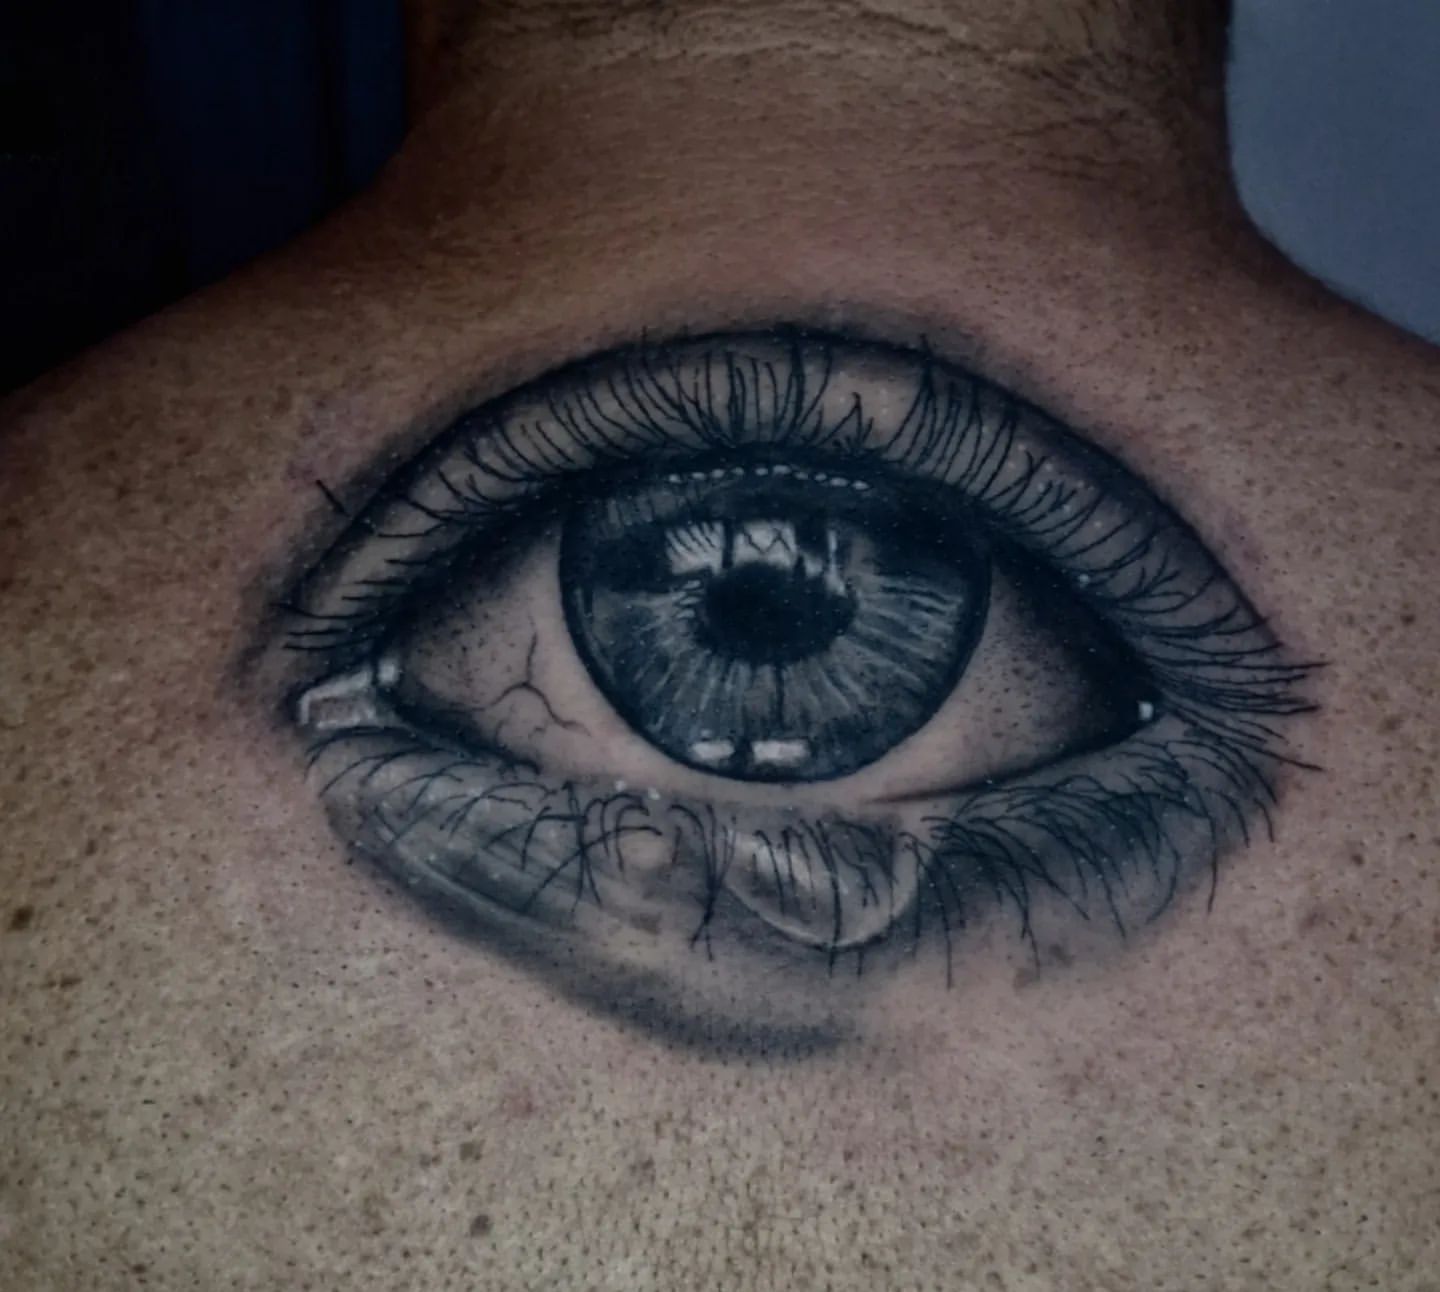 Eye Tattoo